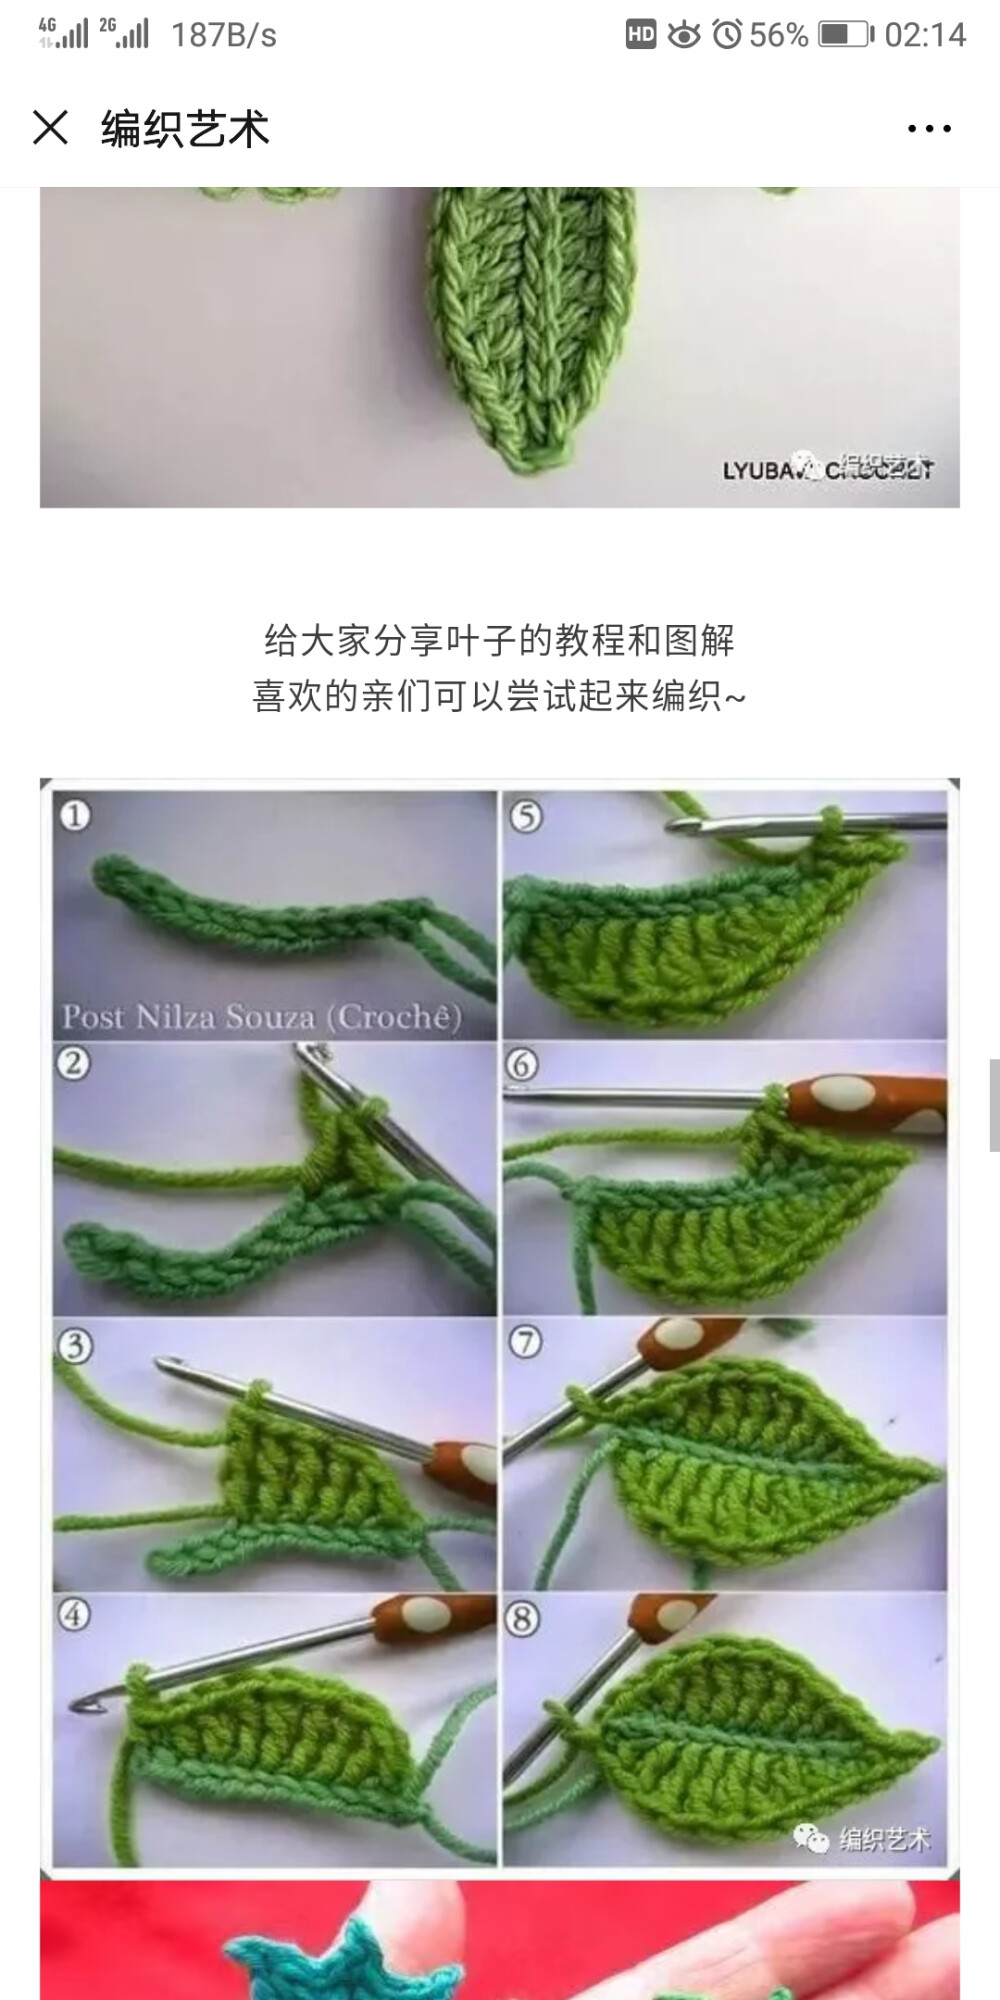 各种叶子的钩织教程图片